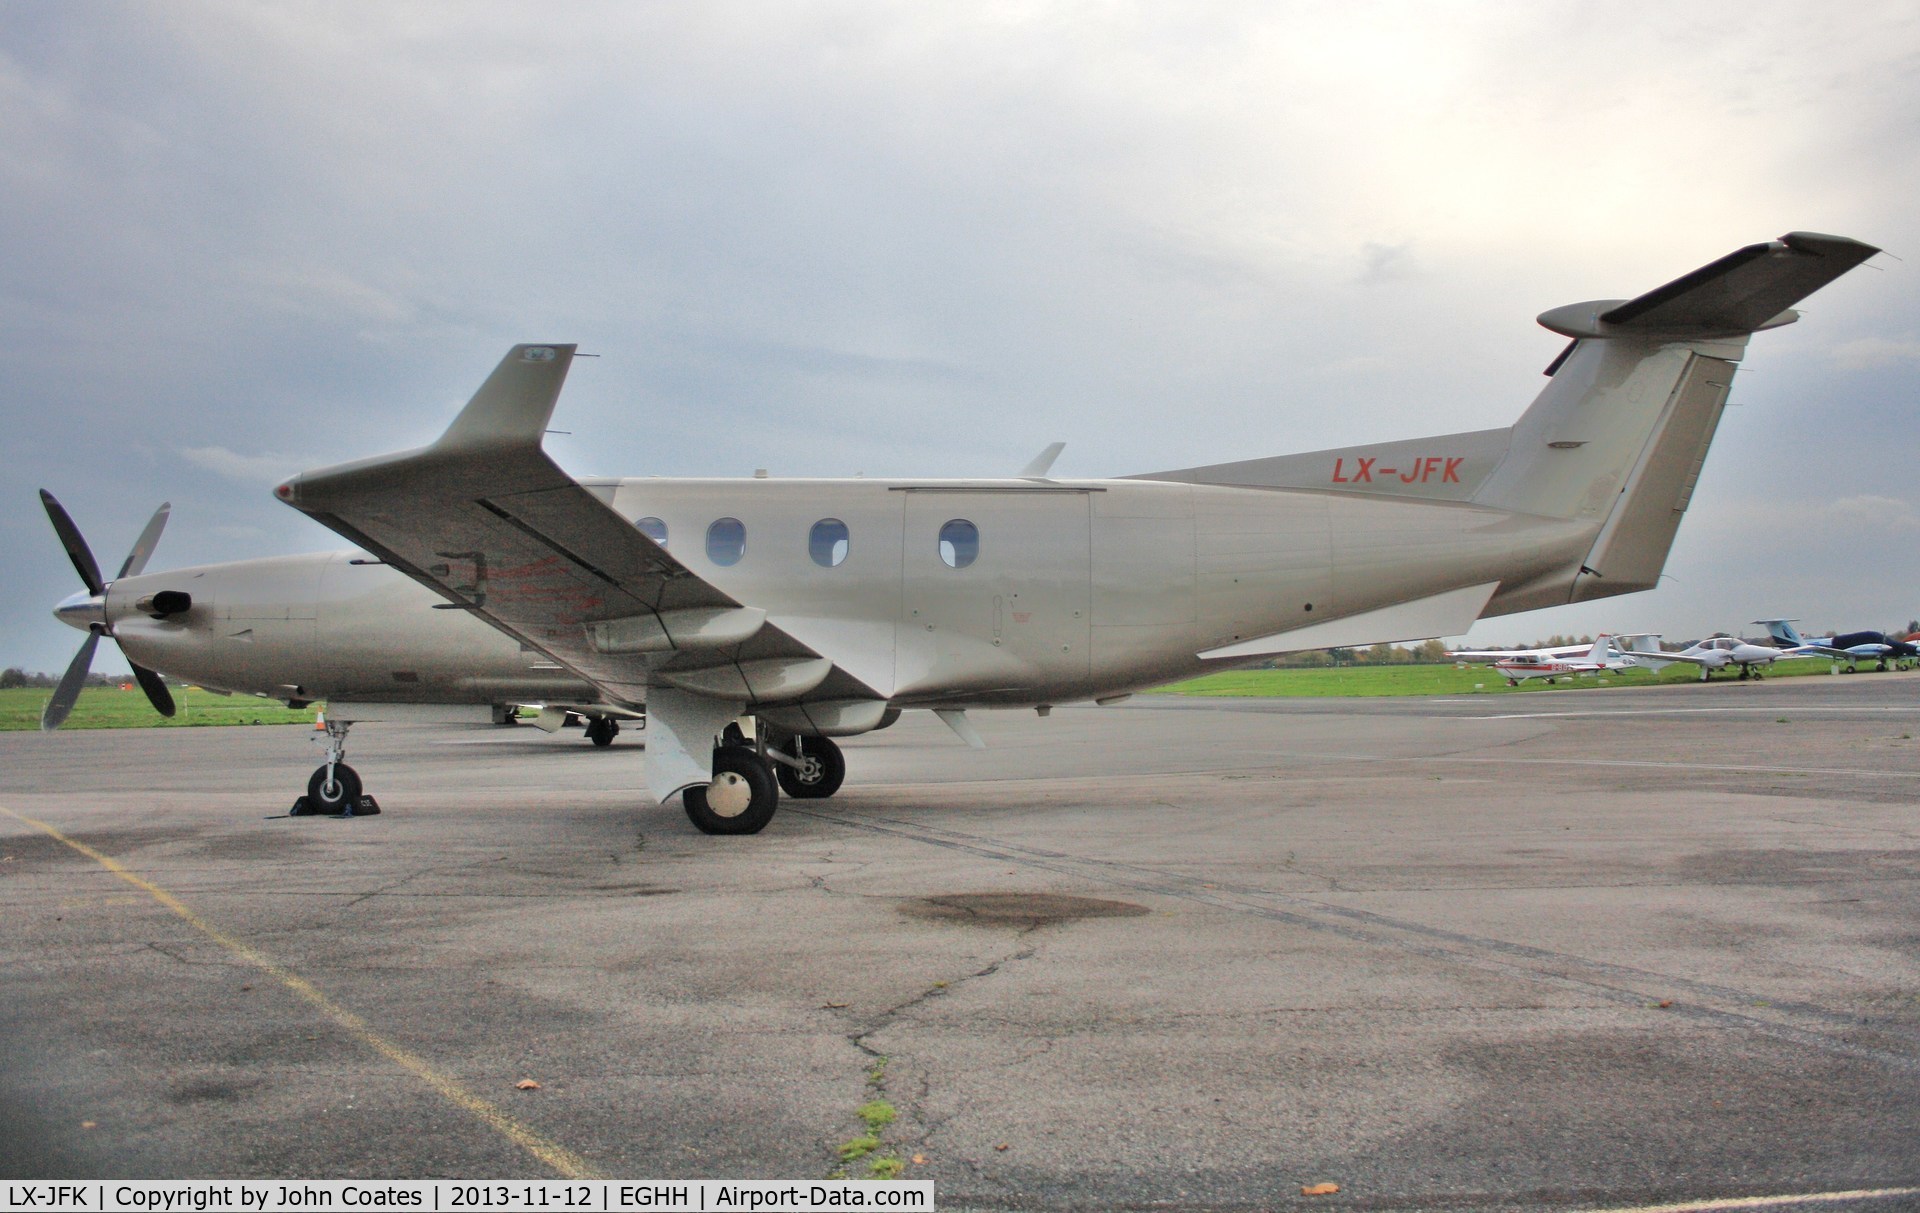 LX-JFK, 2005 Pilatus PC-12/45 C/N 683, Parked at Signatures.